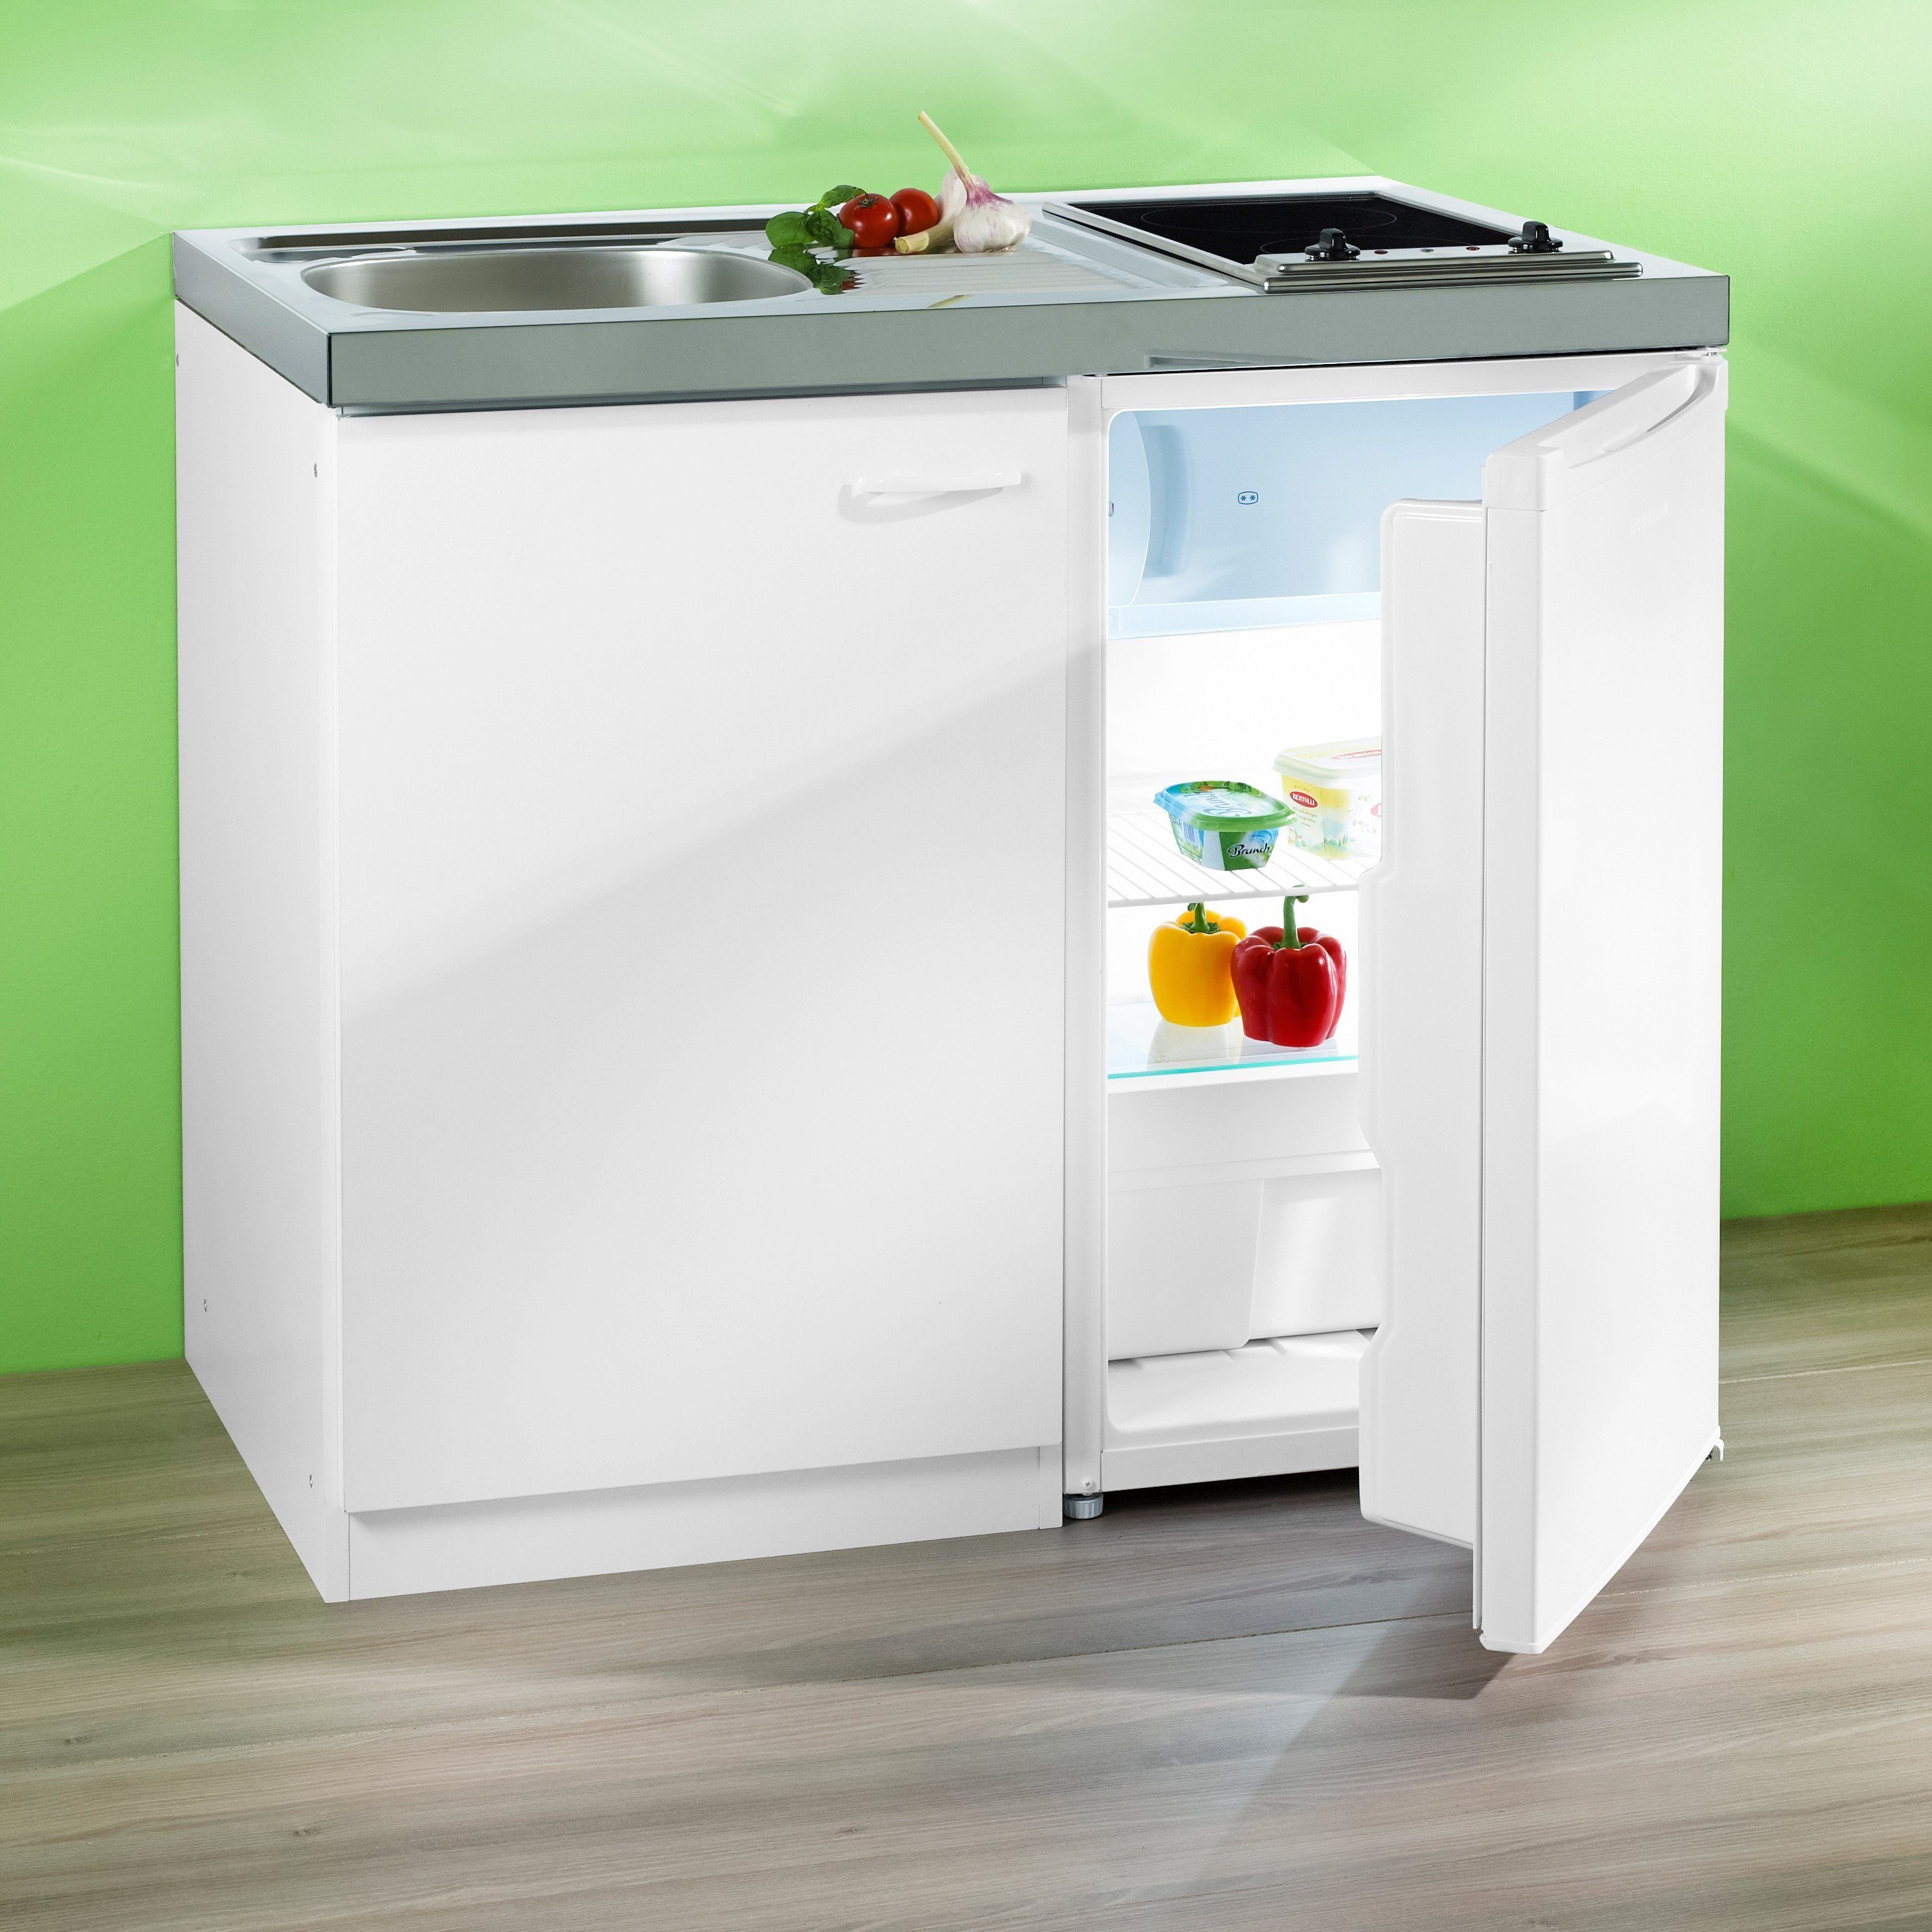 RESPEKTA Miniküche mit Glaskeramik-Kochfeld und Kühlschrank online kaufen |  OTTO